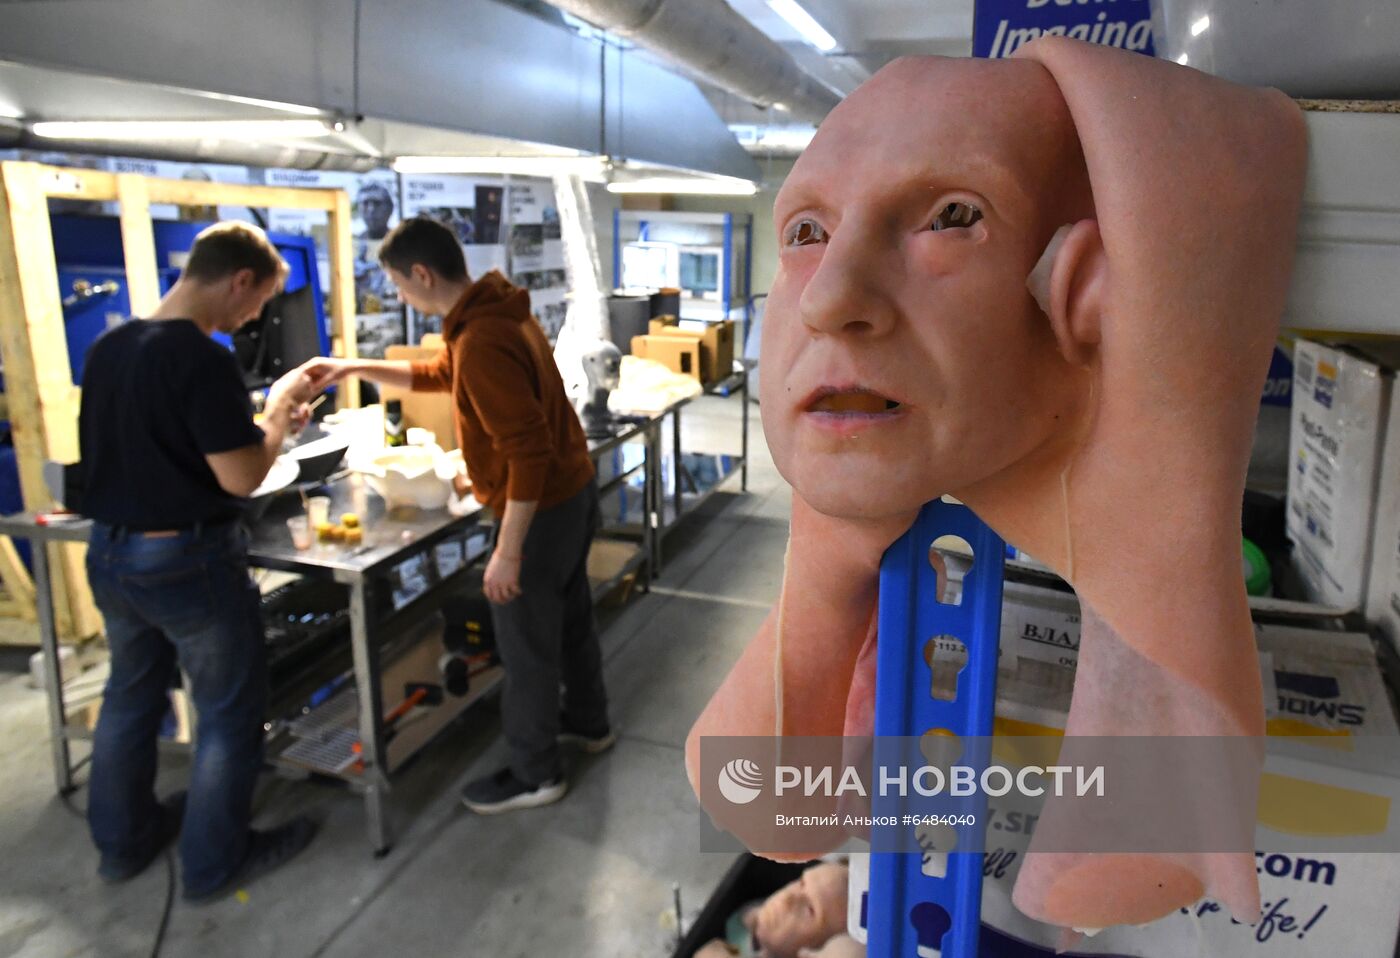 Центр моделирования человекоподобных роботов во Владивостоке